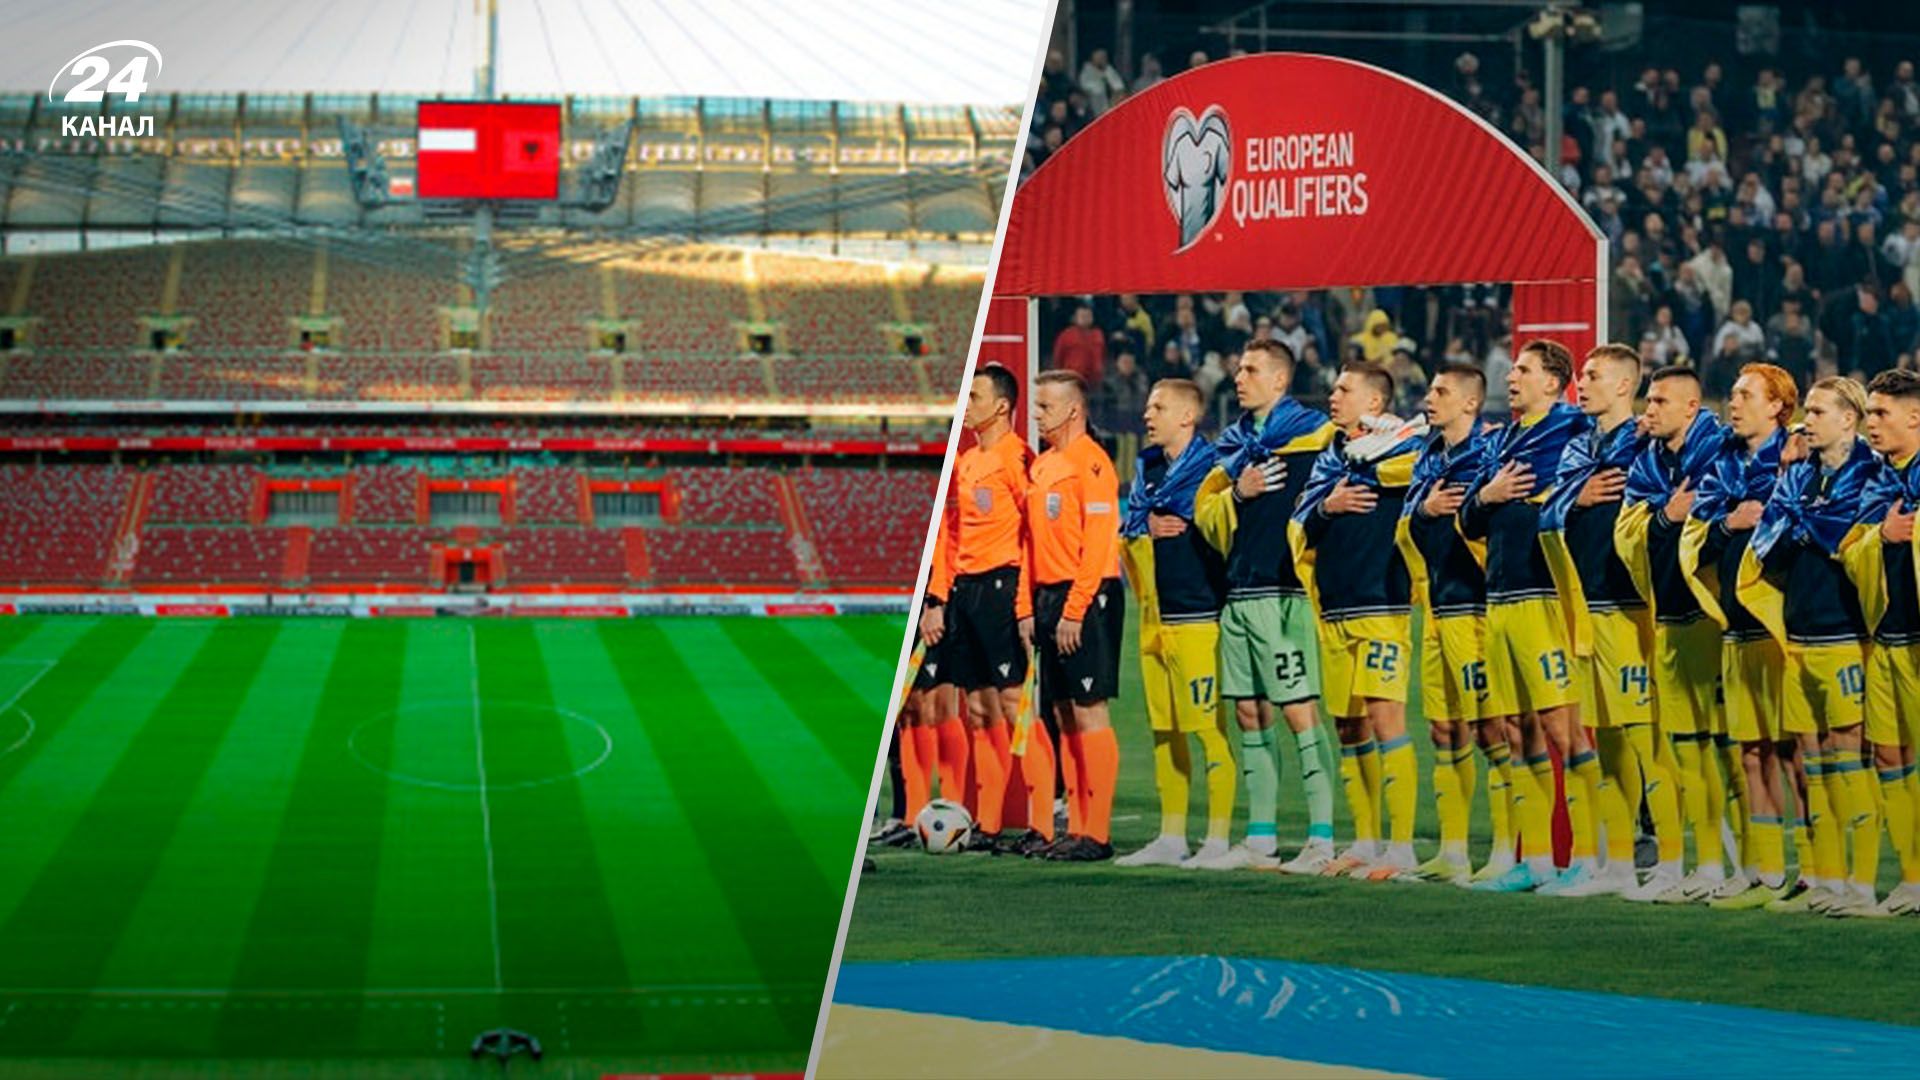 Евро-2024 - где сборная Украины сыграет матч против Польши перед началом чемпионата